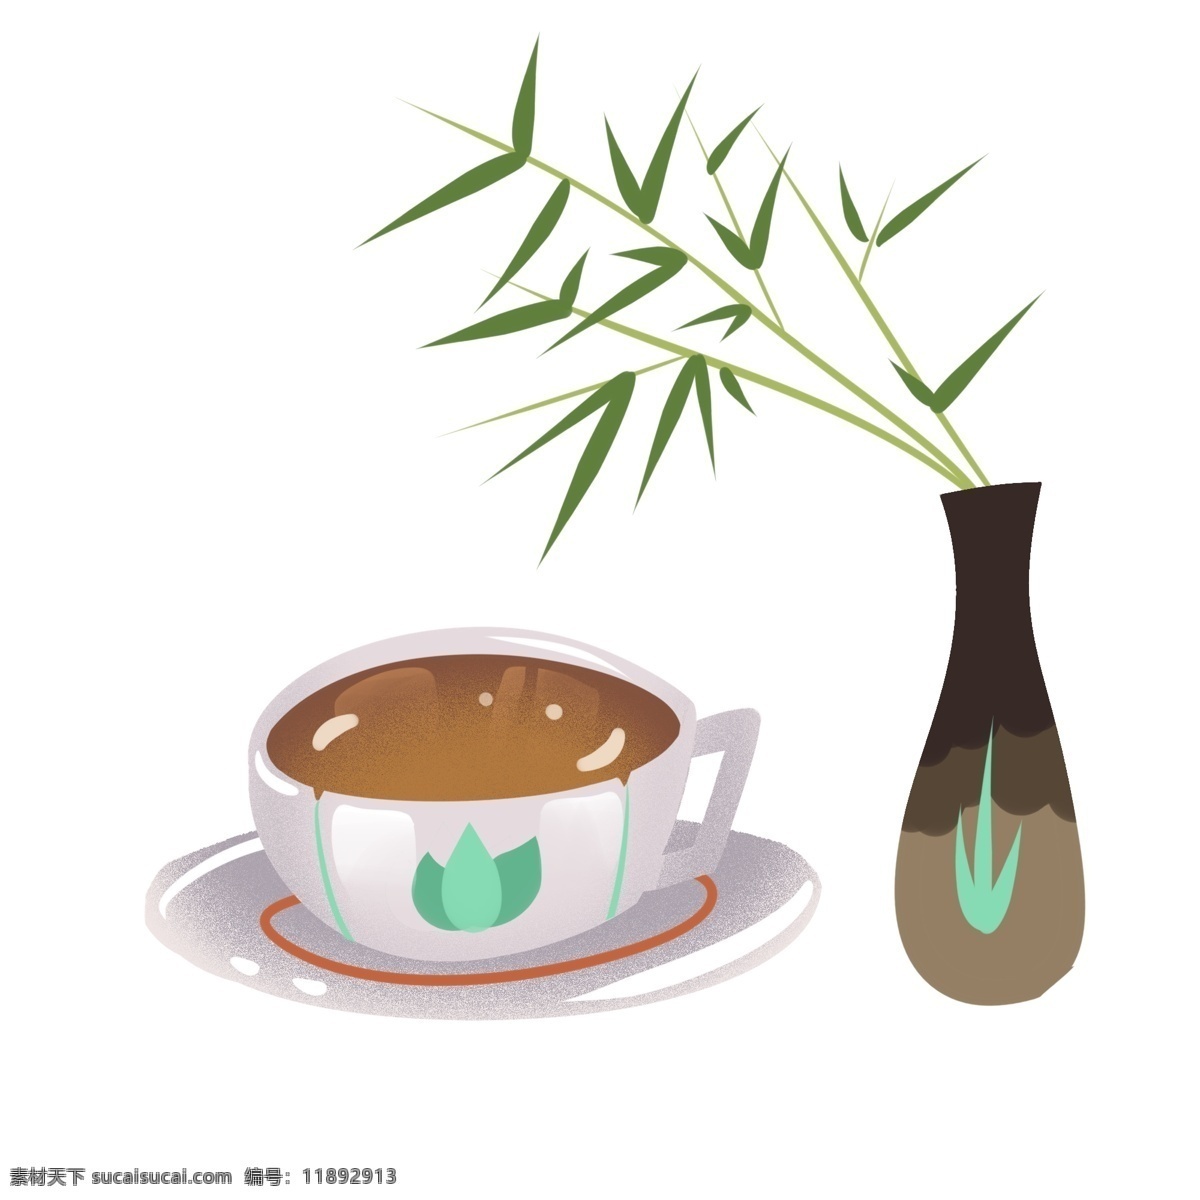 清明节 茶杯 茶具 免 扣 传统 夏天 手绘 饮品 插图 竹子 浓茶 节日 中国风 下午茶 茶叶